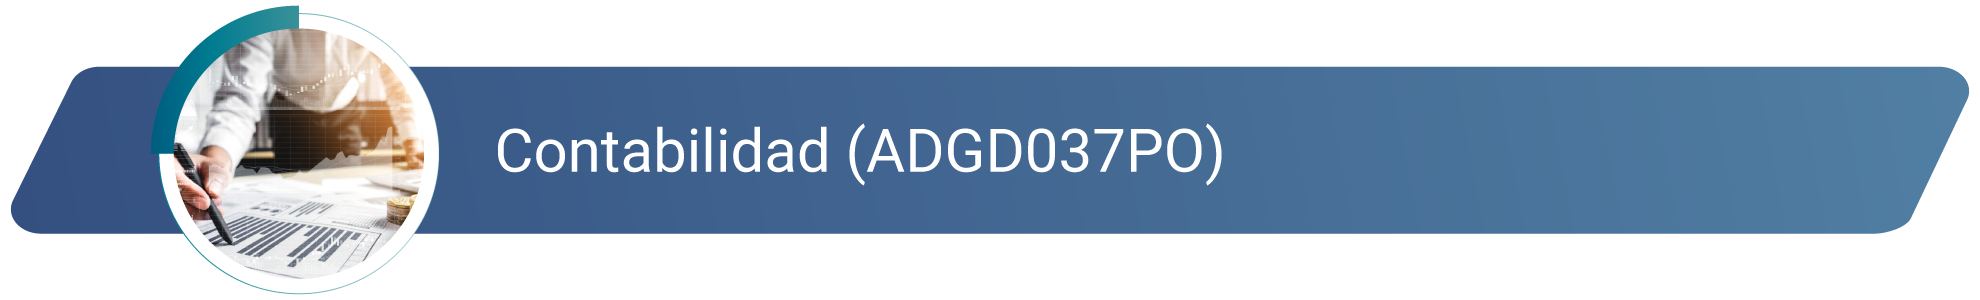 ADGD037PO - Contabilidad